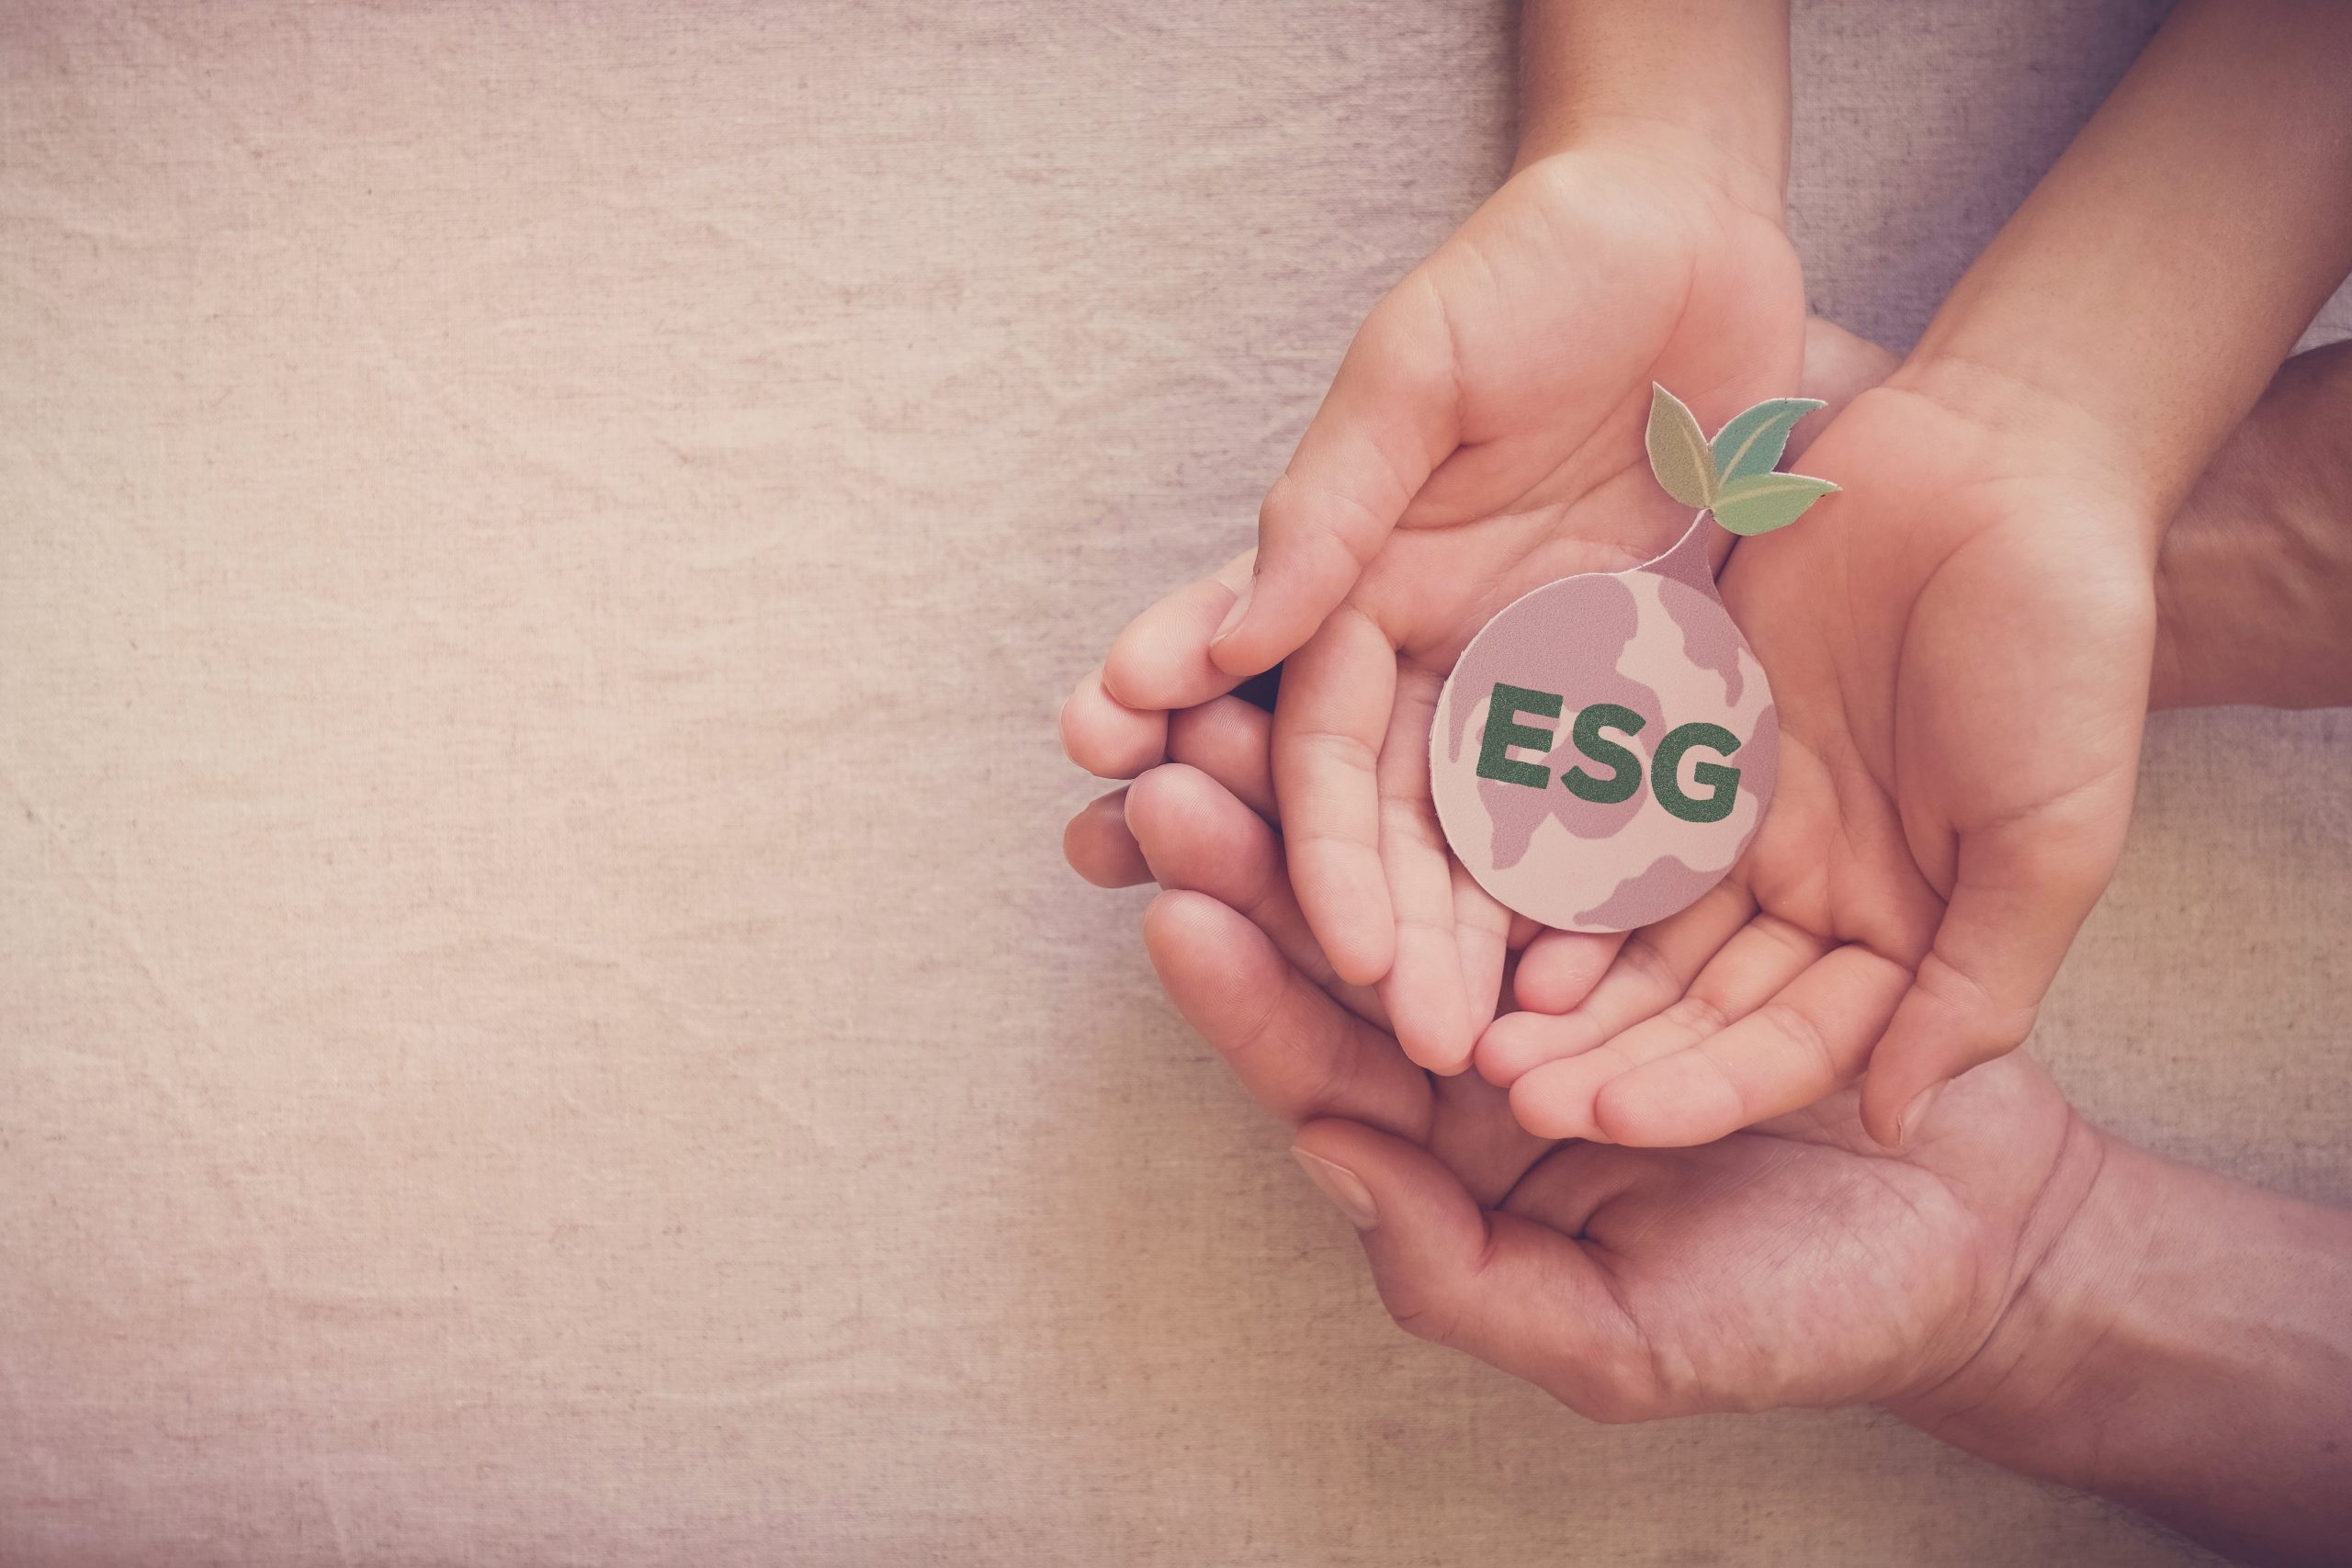 ESG, fot. Shutterstock